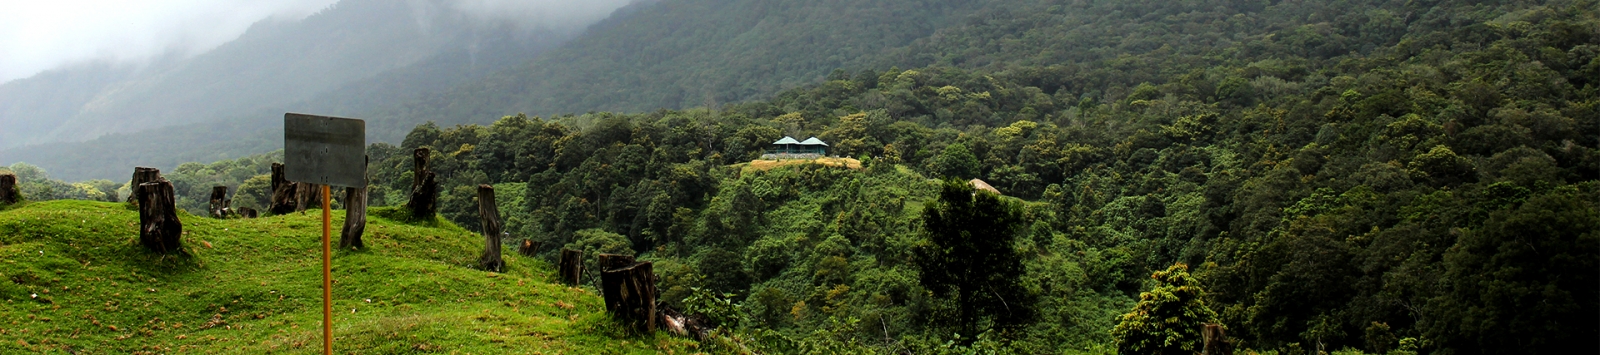 Green Forest in Kerala